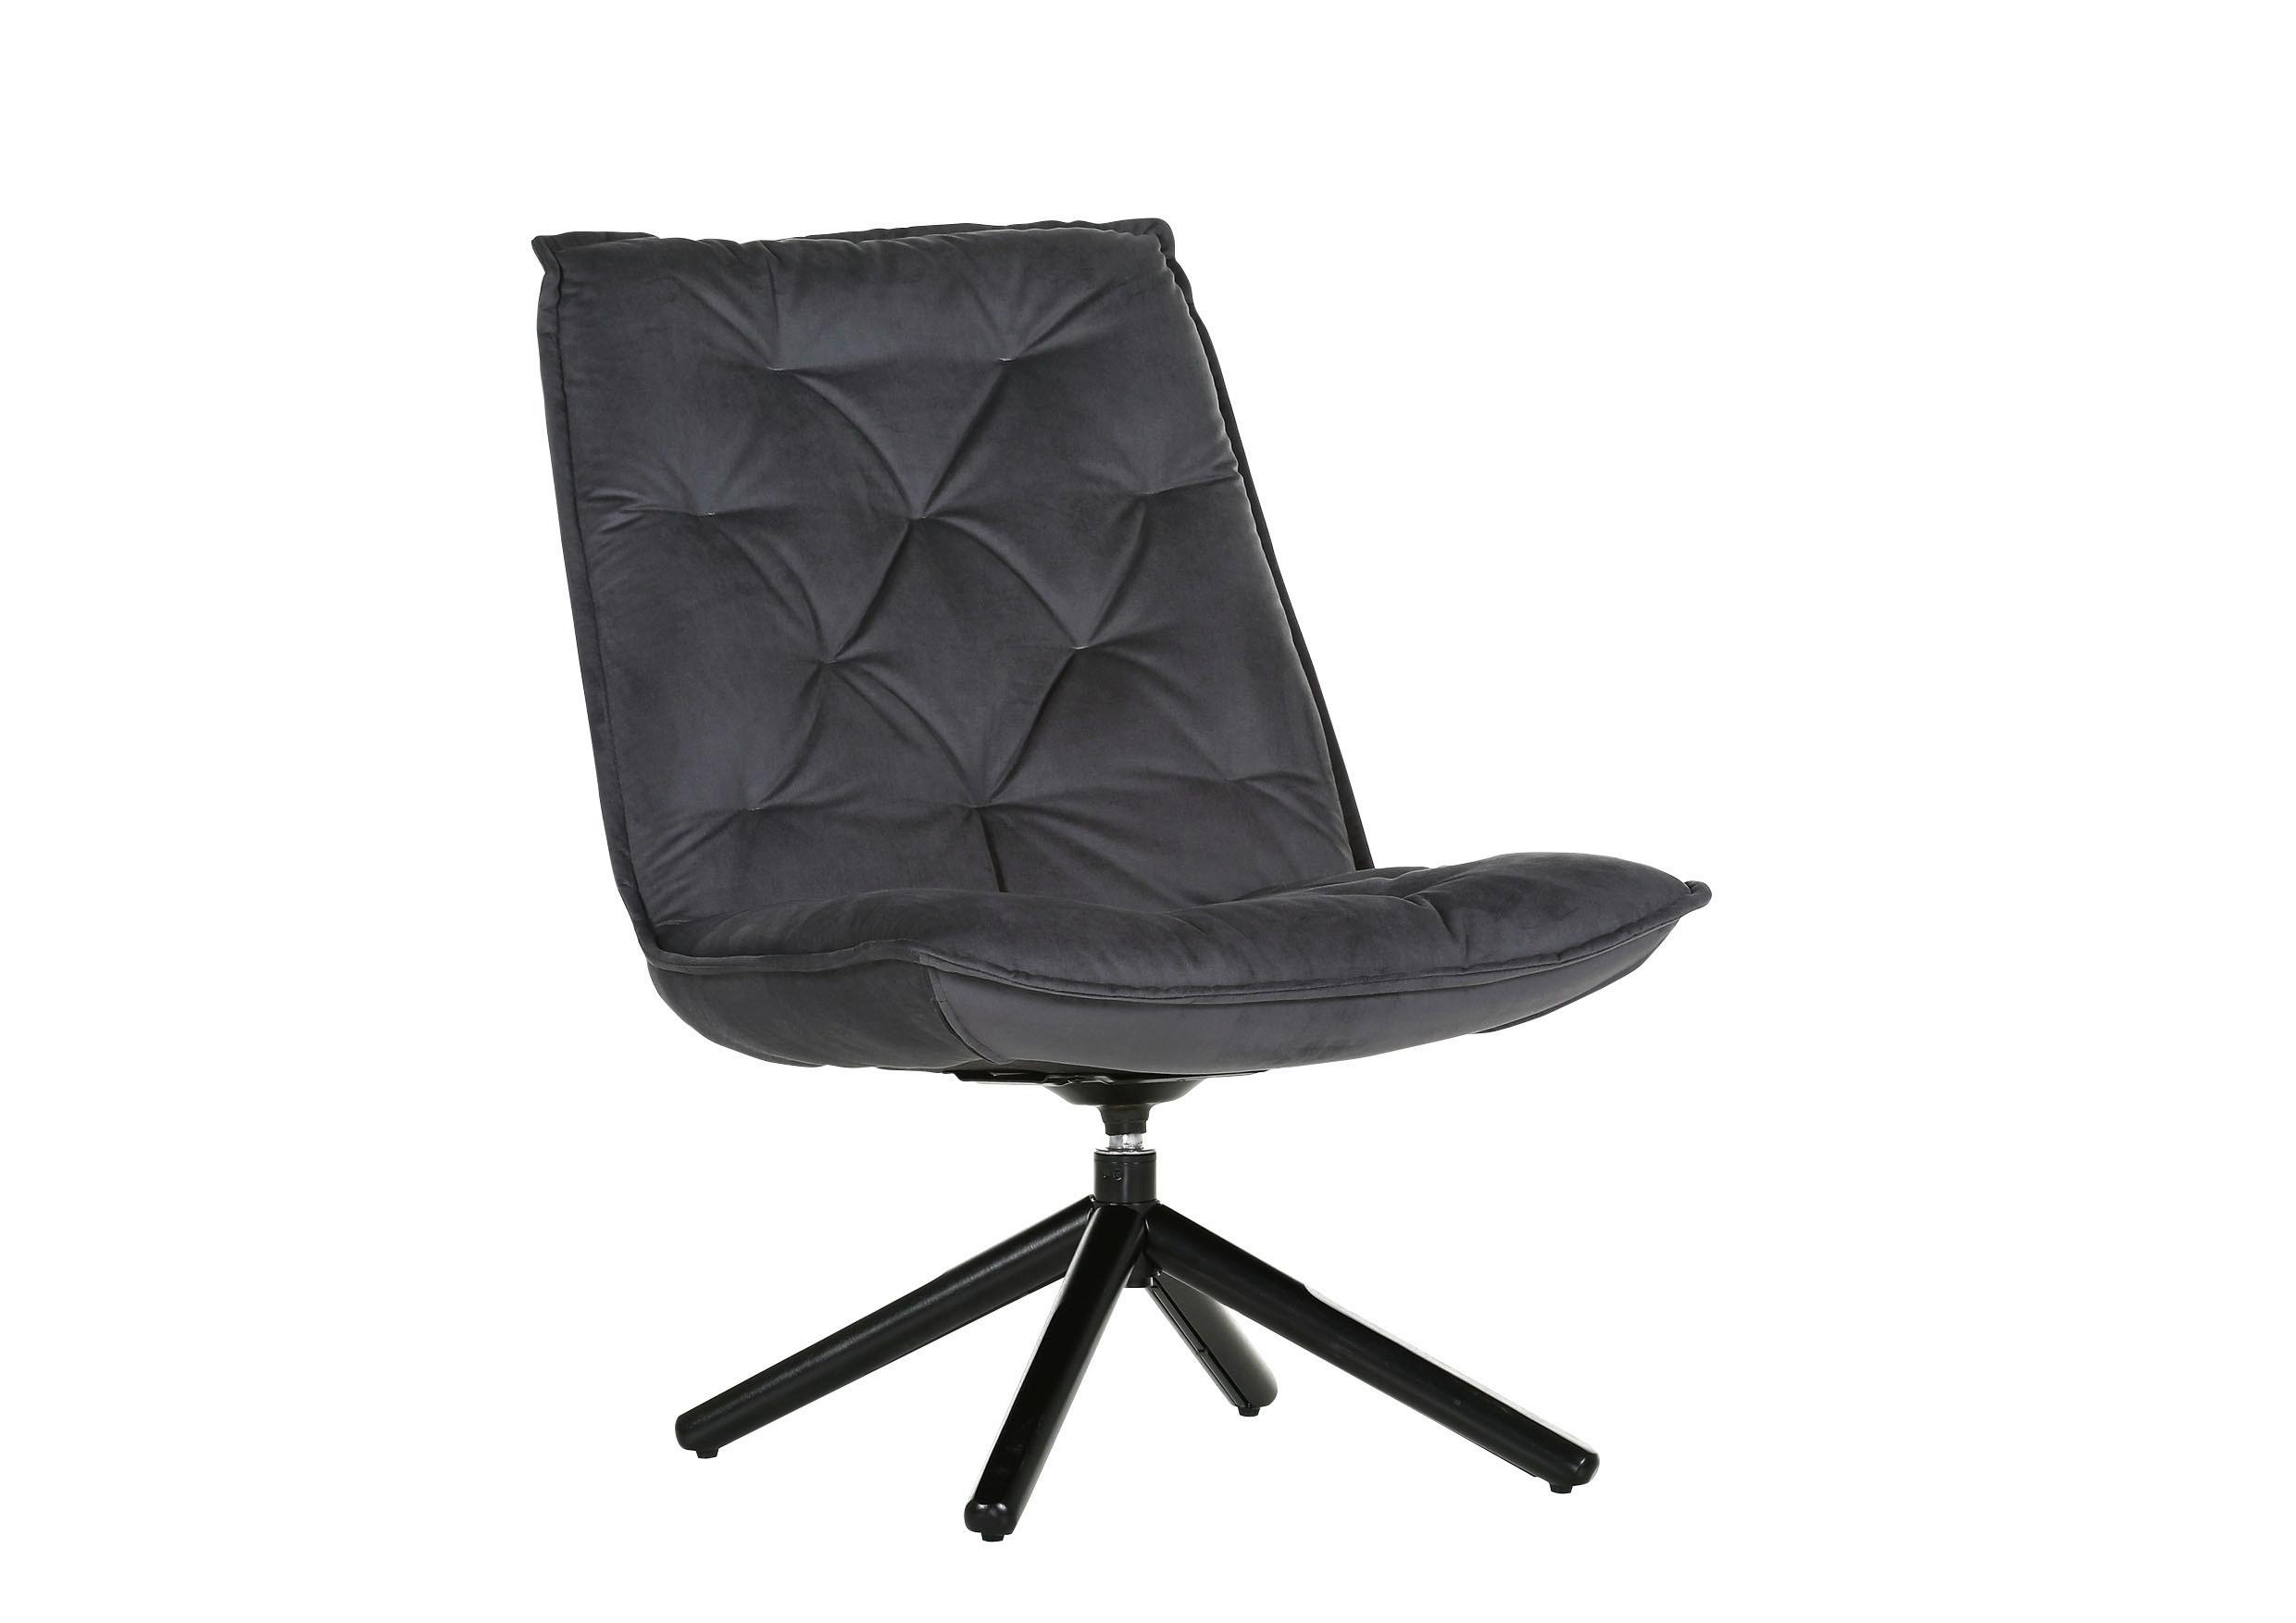 Fotelja Chill - siva/crna, Modern, tekstil/metal (70/96/80cm) - Modern Living